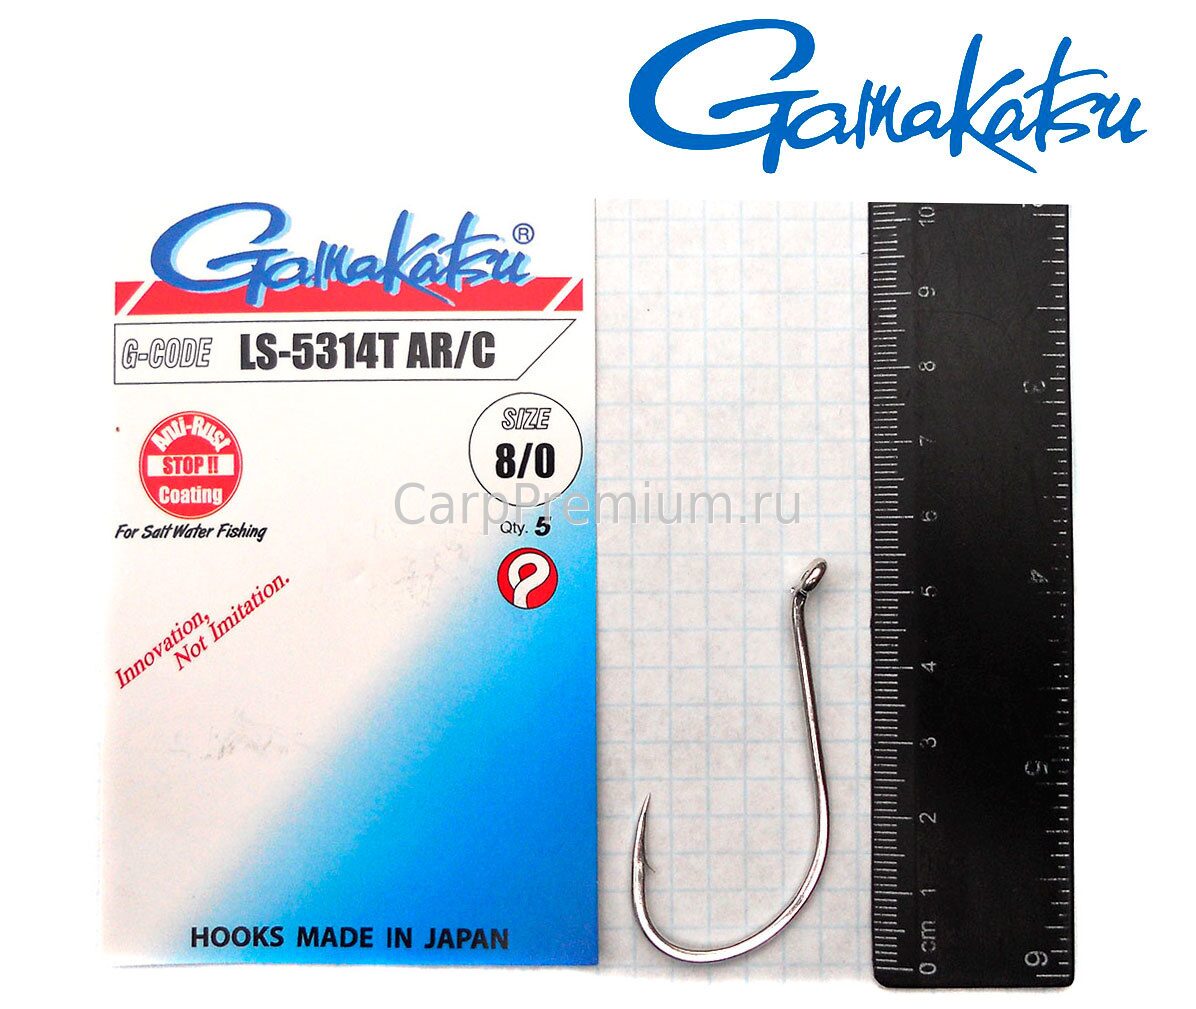 Package Fishing Hooks Gamakatsu Series LS-5314T Ar / C